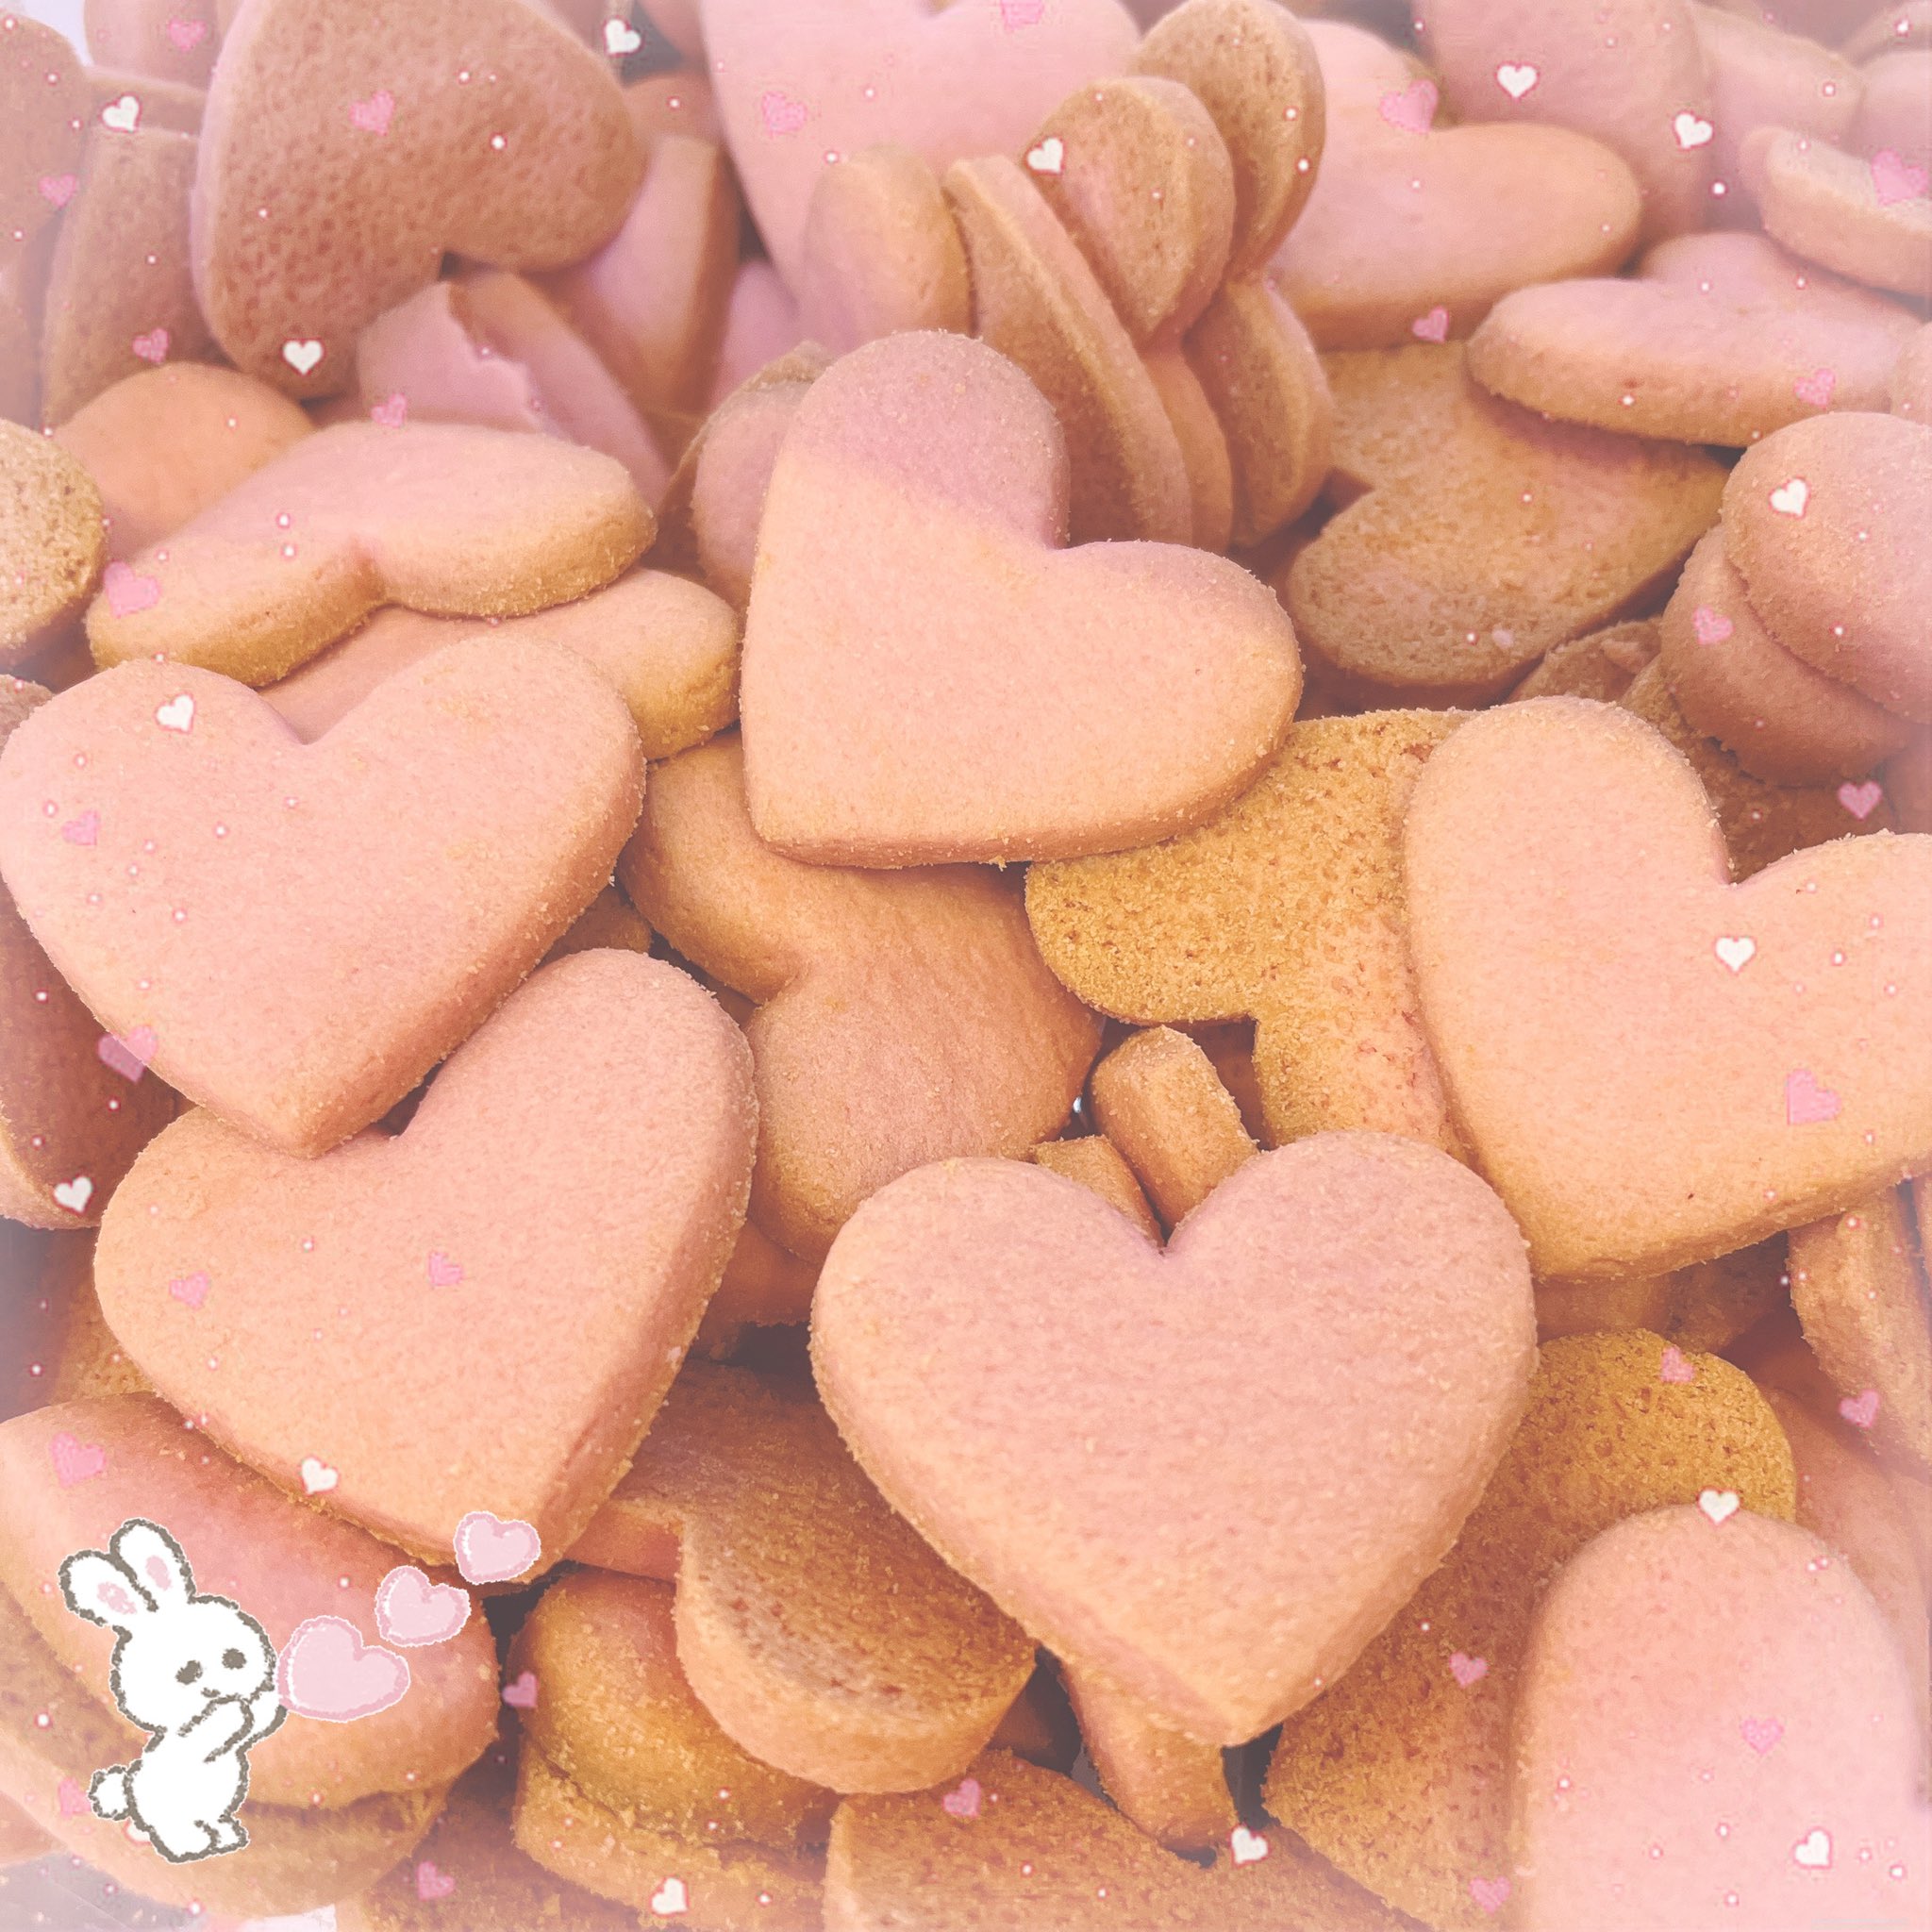 Candy A Go Go 川崎店 ビックハートクッキー ストロベリー ハート型でストロベリー味のクッキー ピンク色でとっても可愛い バレンタインにもぴったりです ᴗ プレーン ココア味もご用意しております Cagg ラゾーナ川崎プラザ